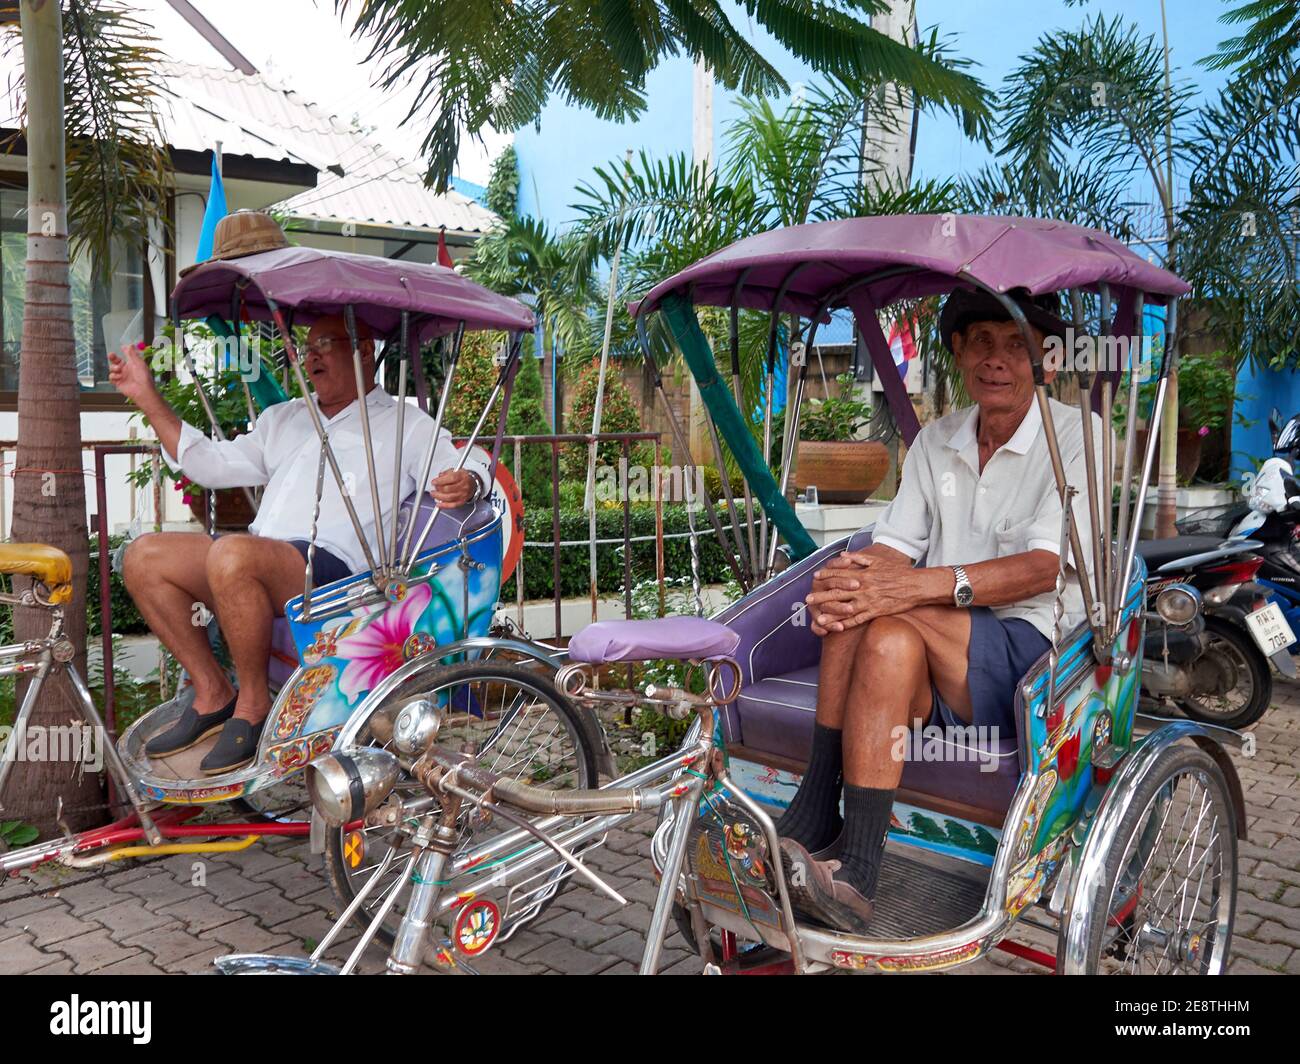 Due piloti pedicab maschi si siedono casualmente nei loro risciò in attesa per l'arrivo di passeggeri che utilizzeranno i loro servizi Foto Stock